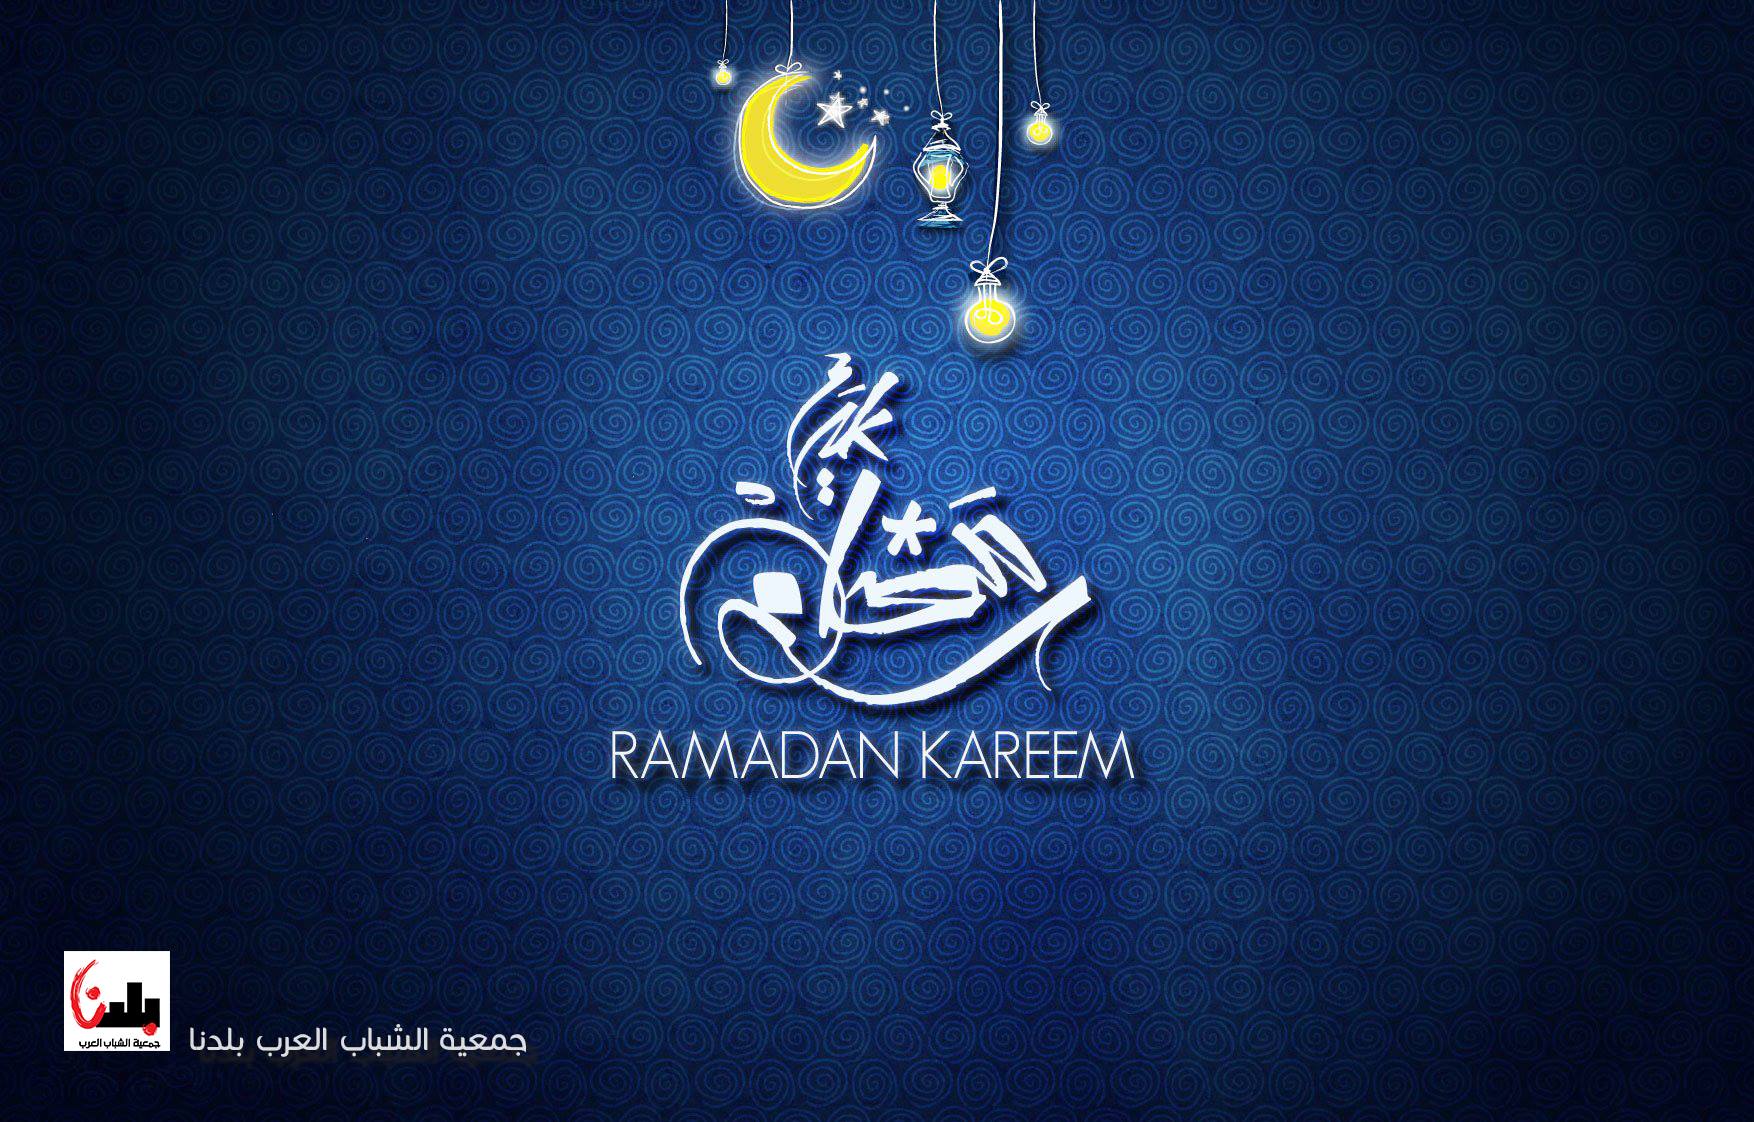 تتقدم جمعية الشباب العرب-بلدنا بأحر التهاني والتبريكات بمناسبة حلول شهر رمضان المبارك